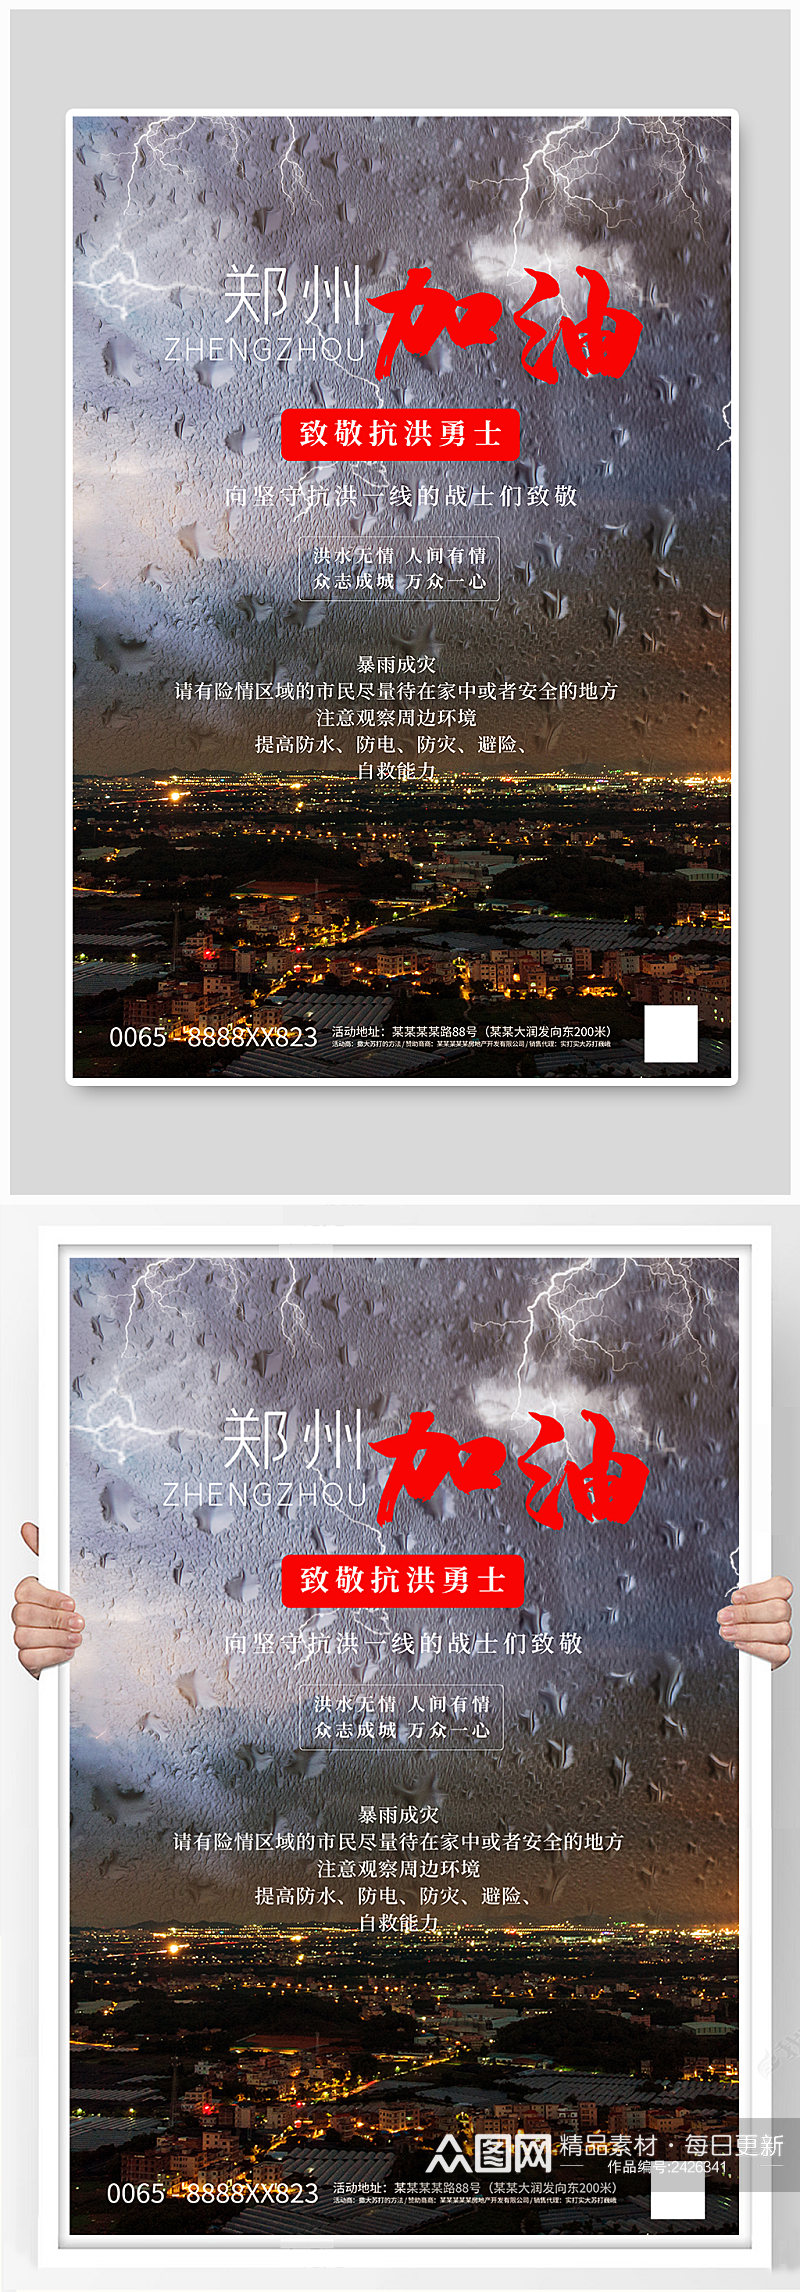 郑州加油摄影图灰色创意海报素材